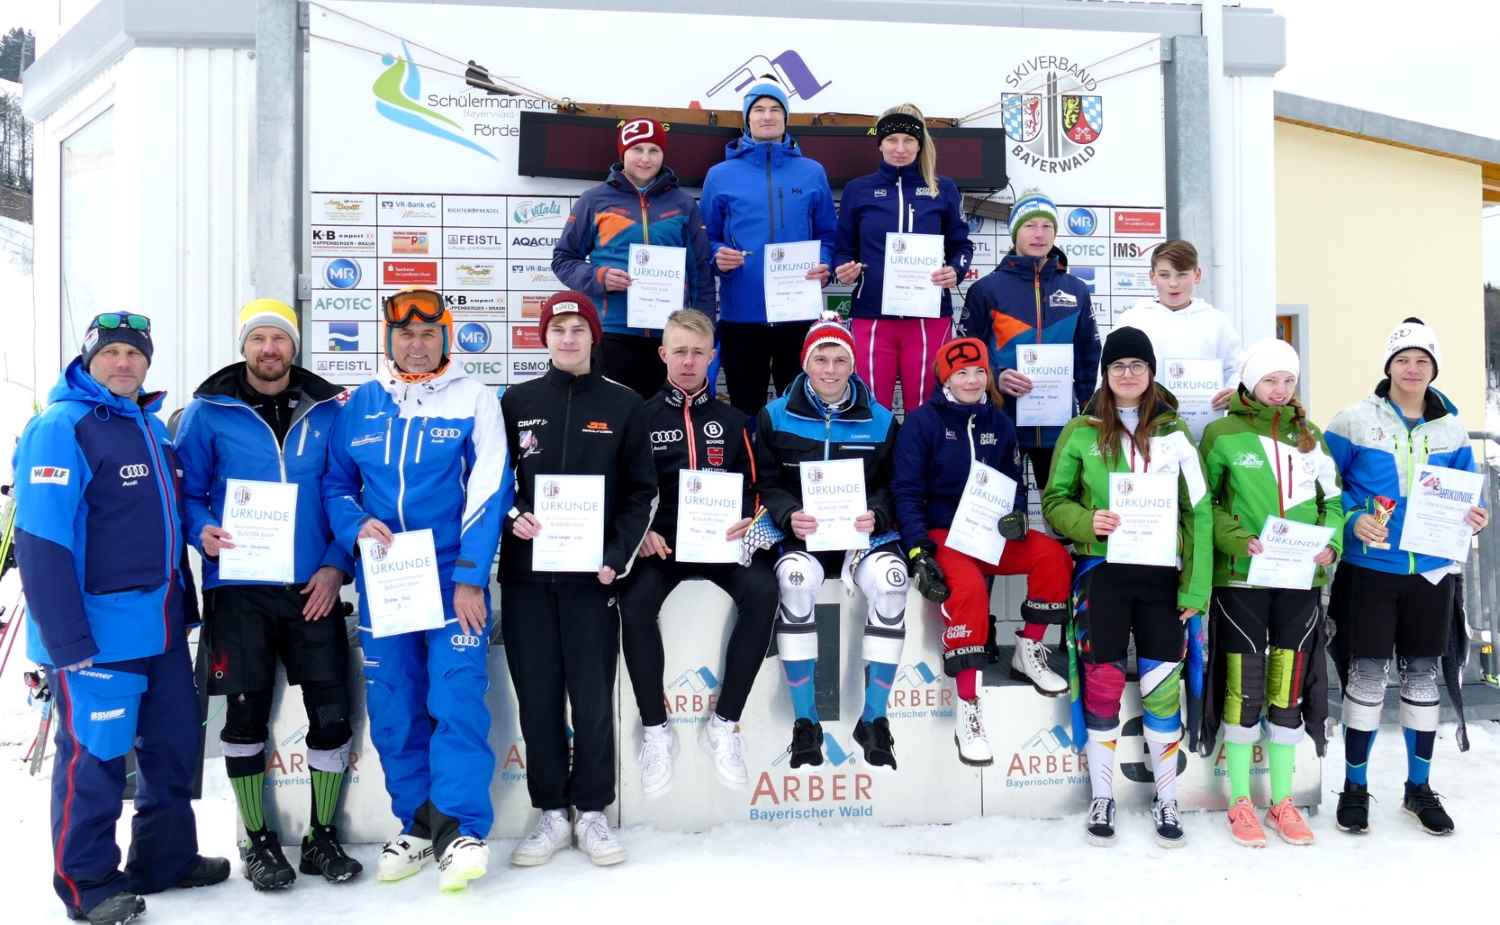 Das sind die Slalom-Bayerwaldmeister 2020.